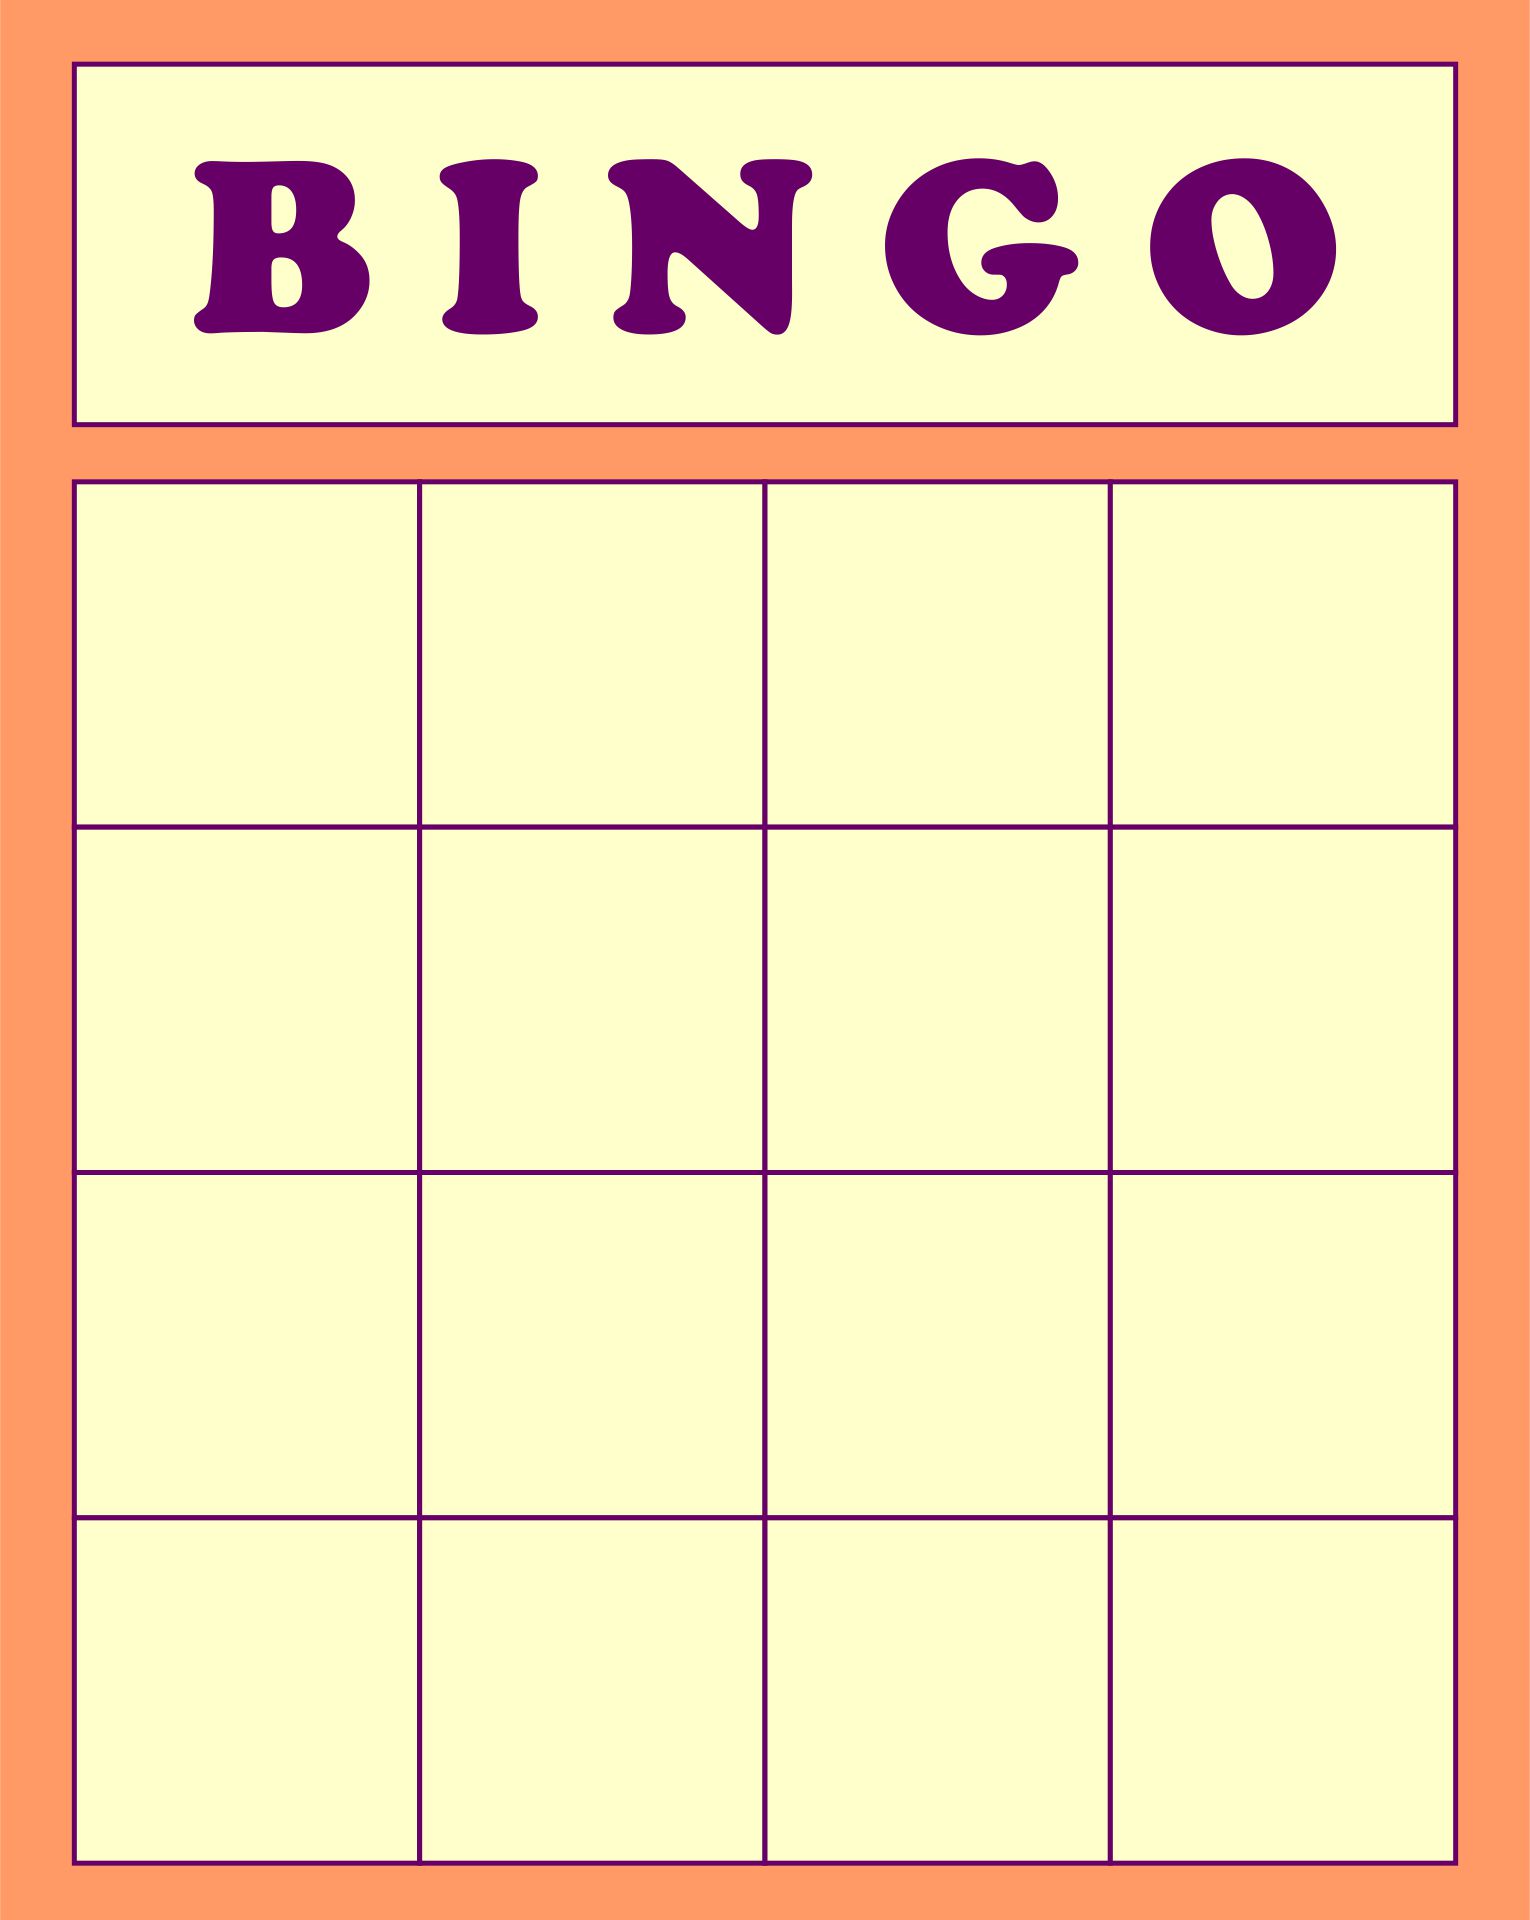 free-printable-bingo-cards-blank-printable-world-holiday